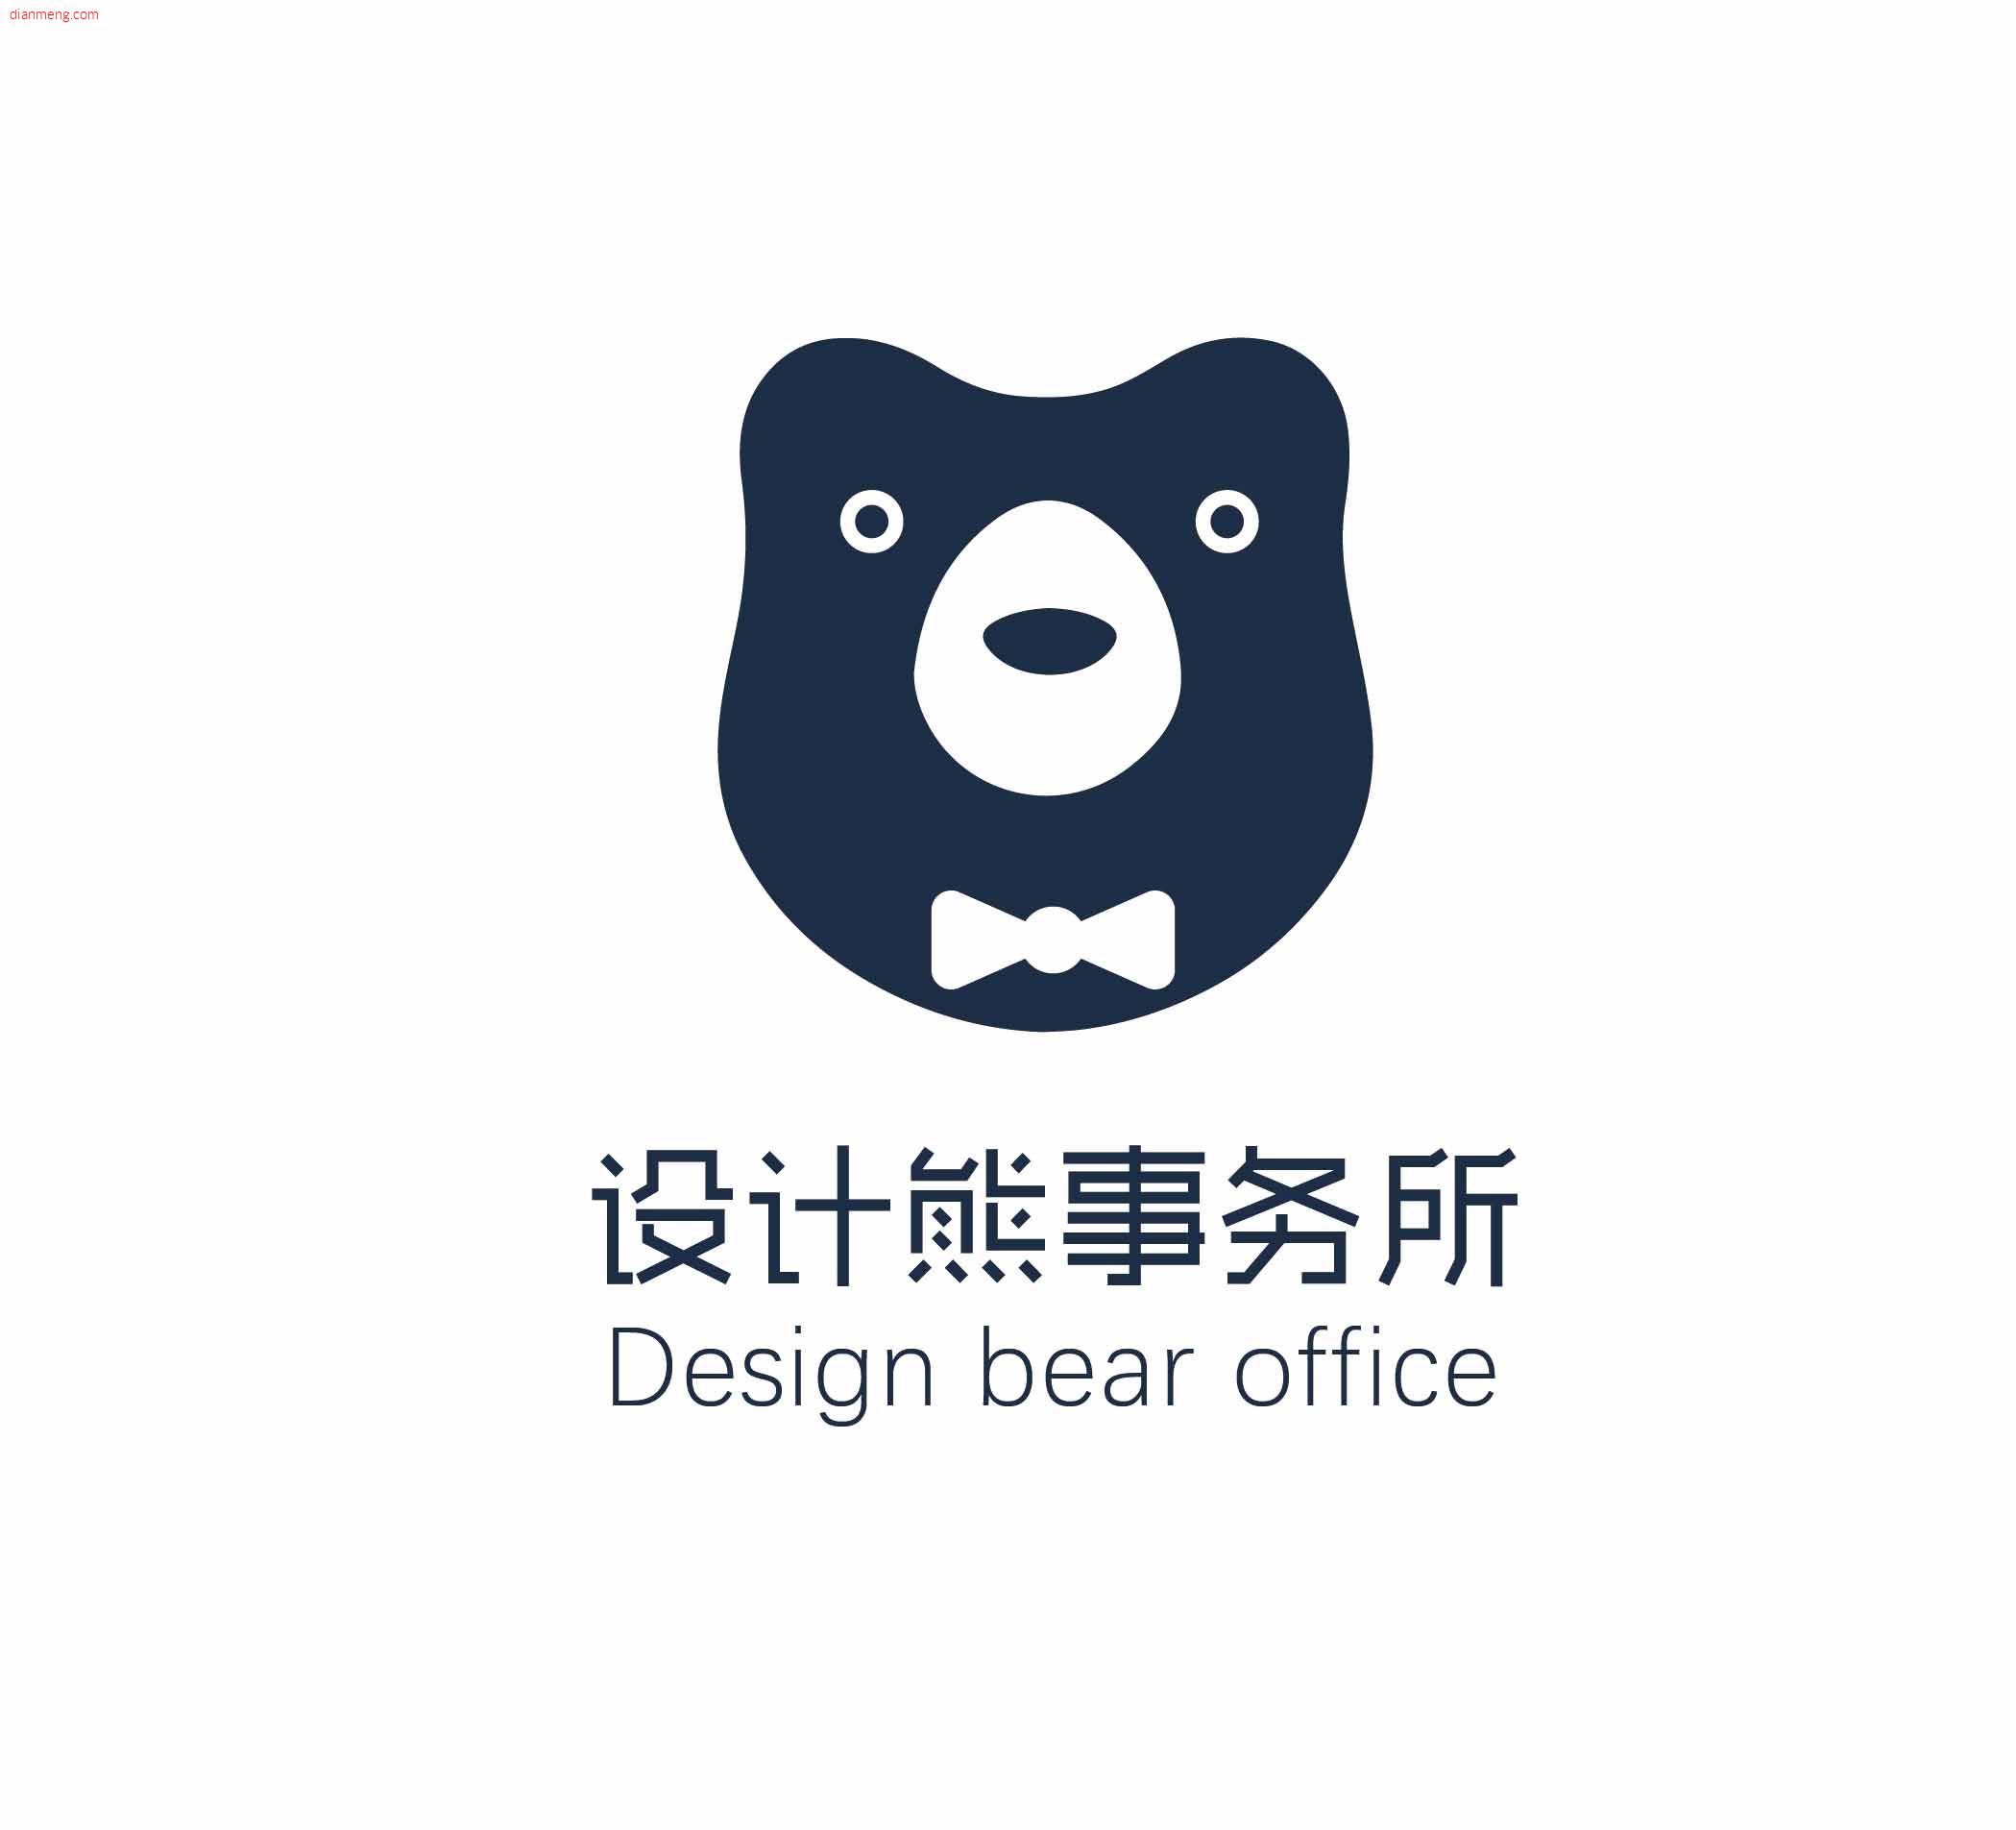 设计熊设计工作室LOGO